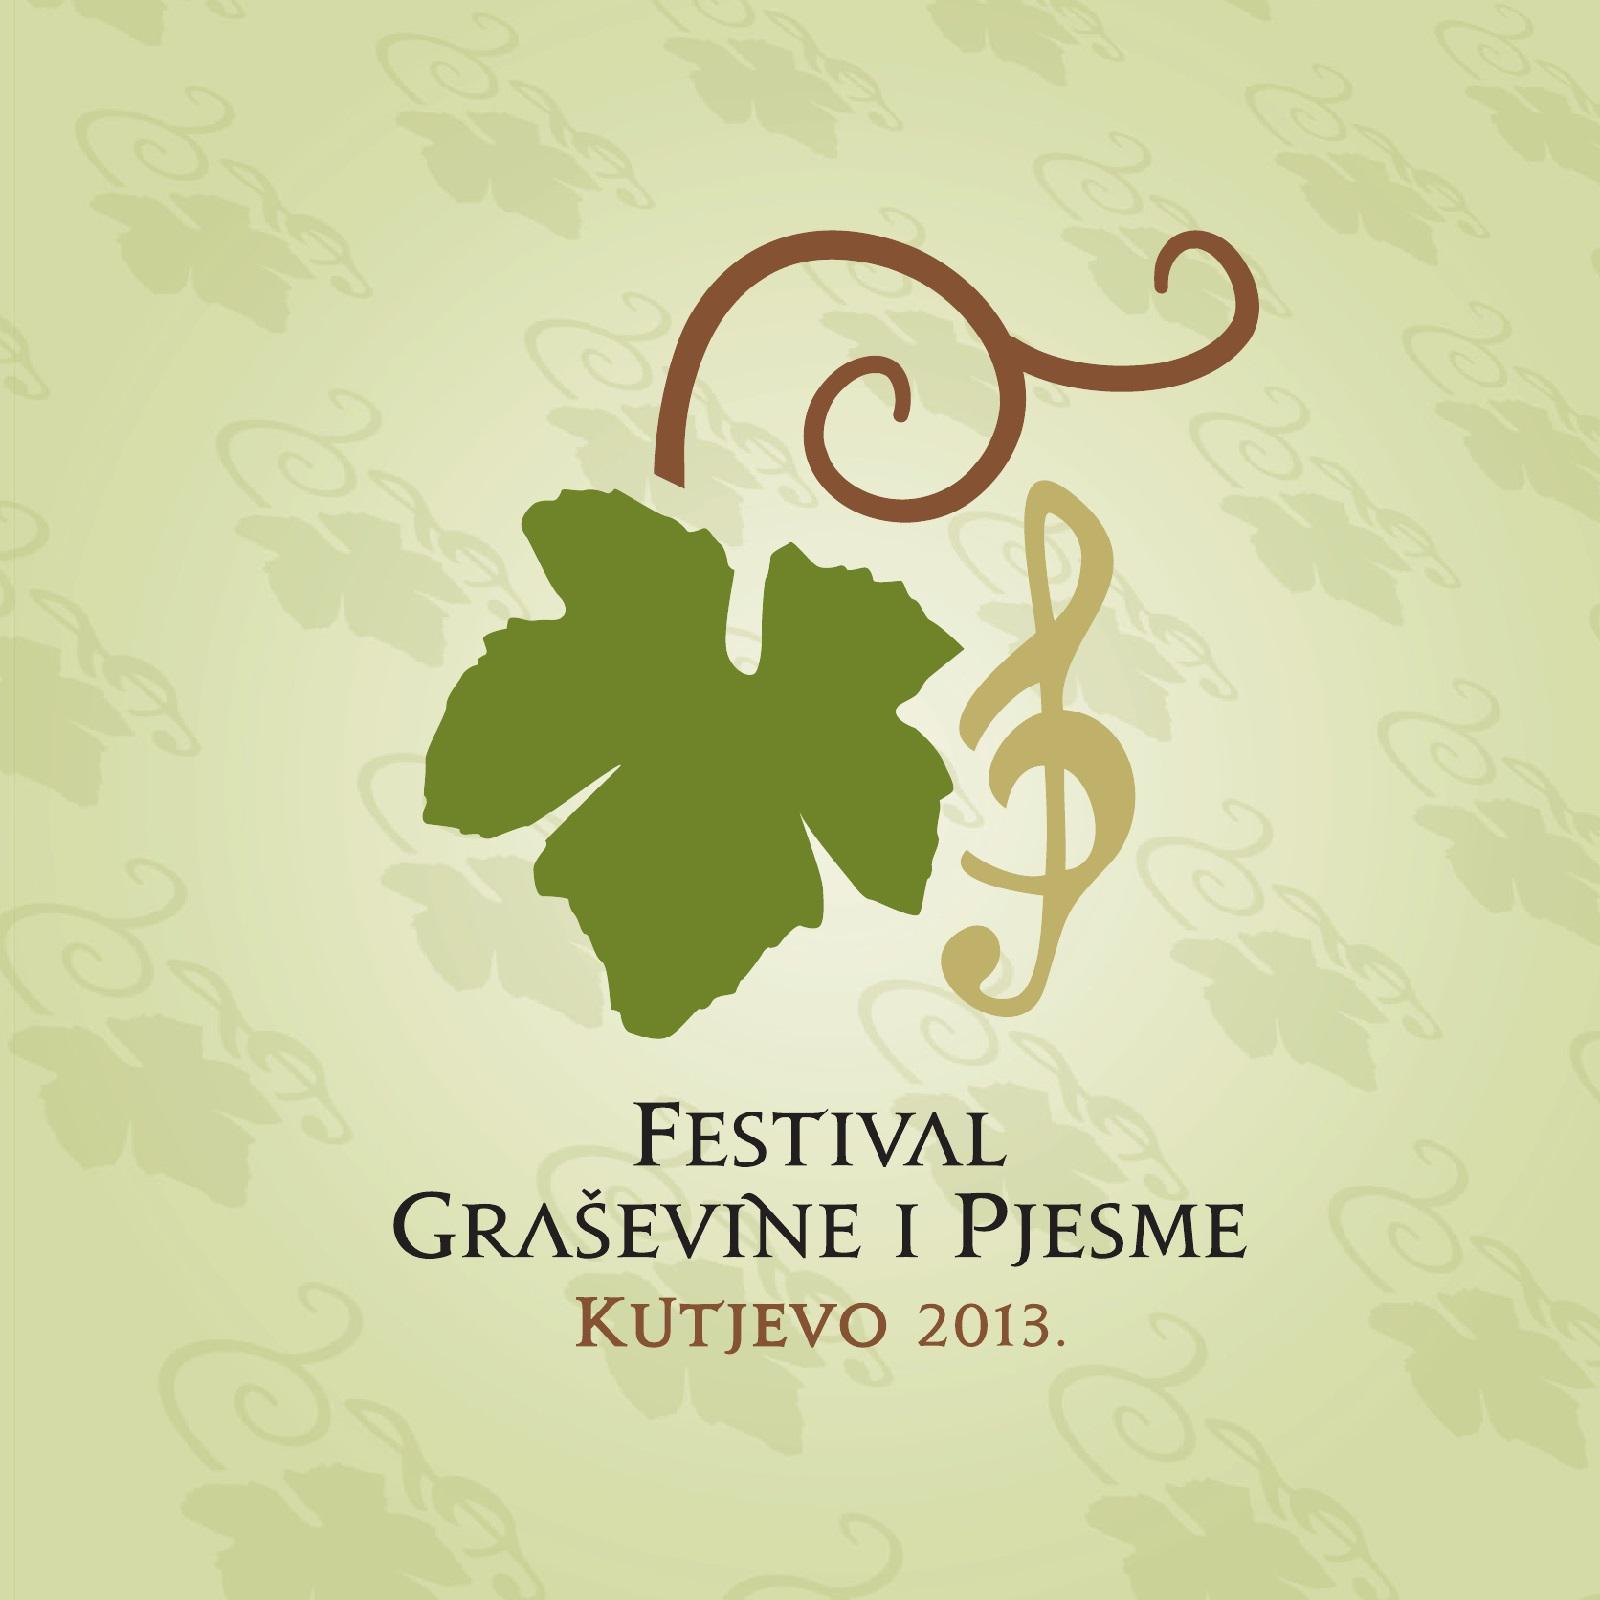 Festival Pjesme I Gra evine  Kutjevo 2013